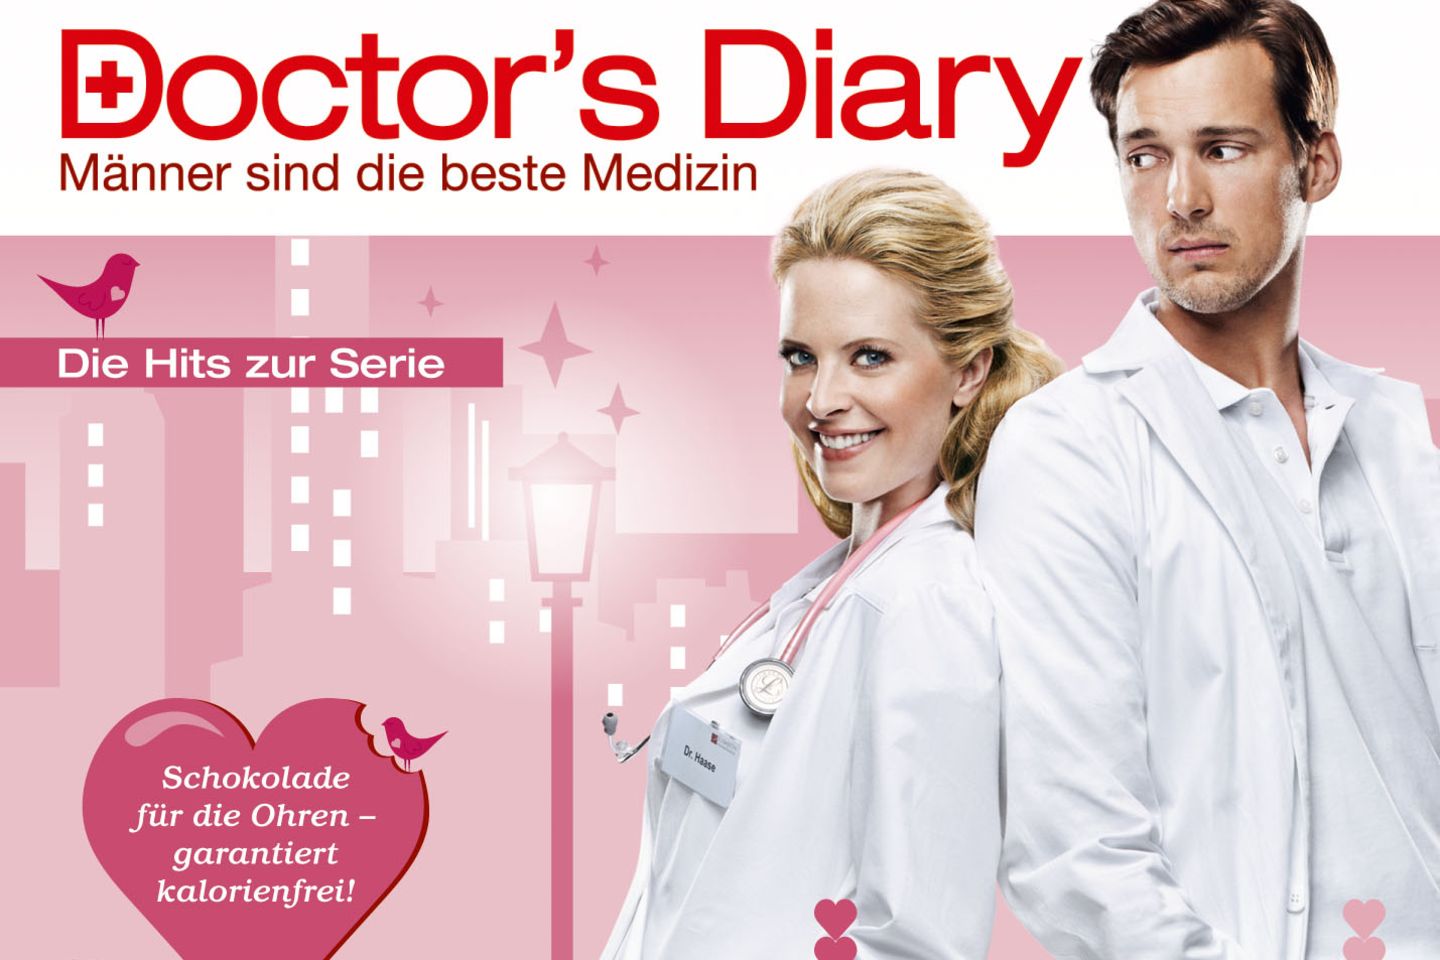 Doctor's Diary: Die Hits zur Serie